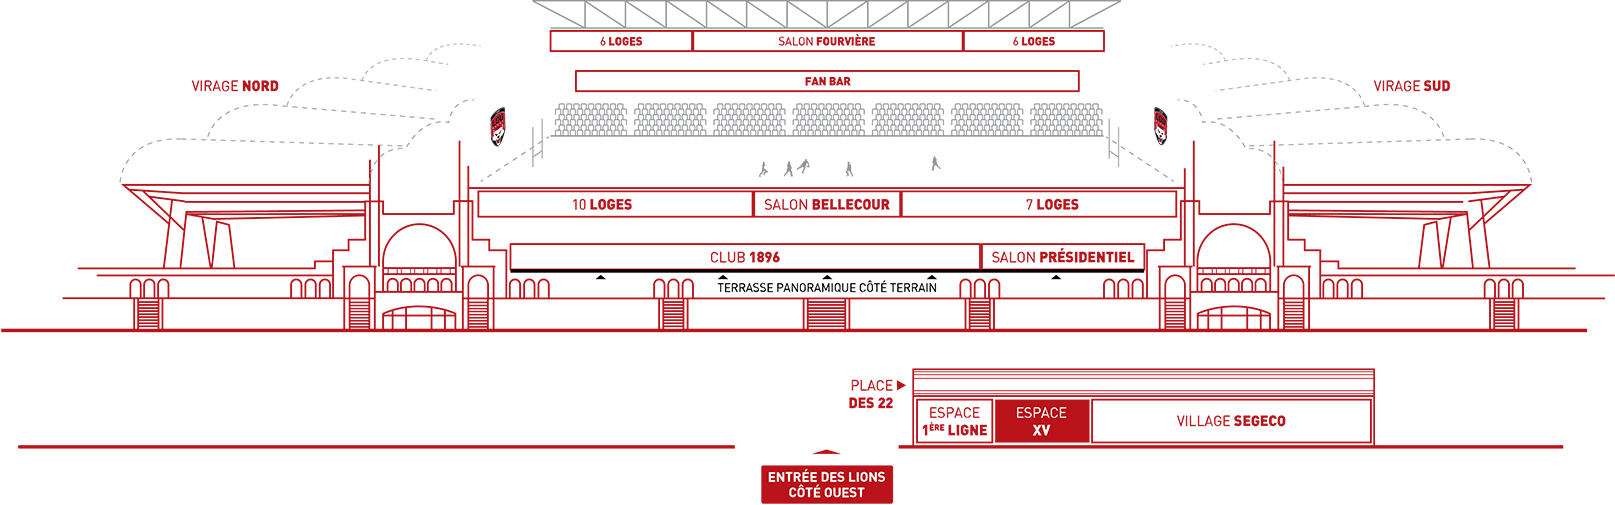 Espace XV 15 Matmut Stadium Lyon Gerland plan schématique 